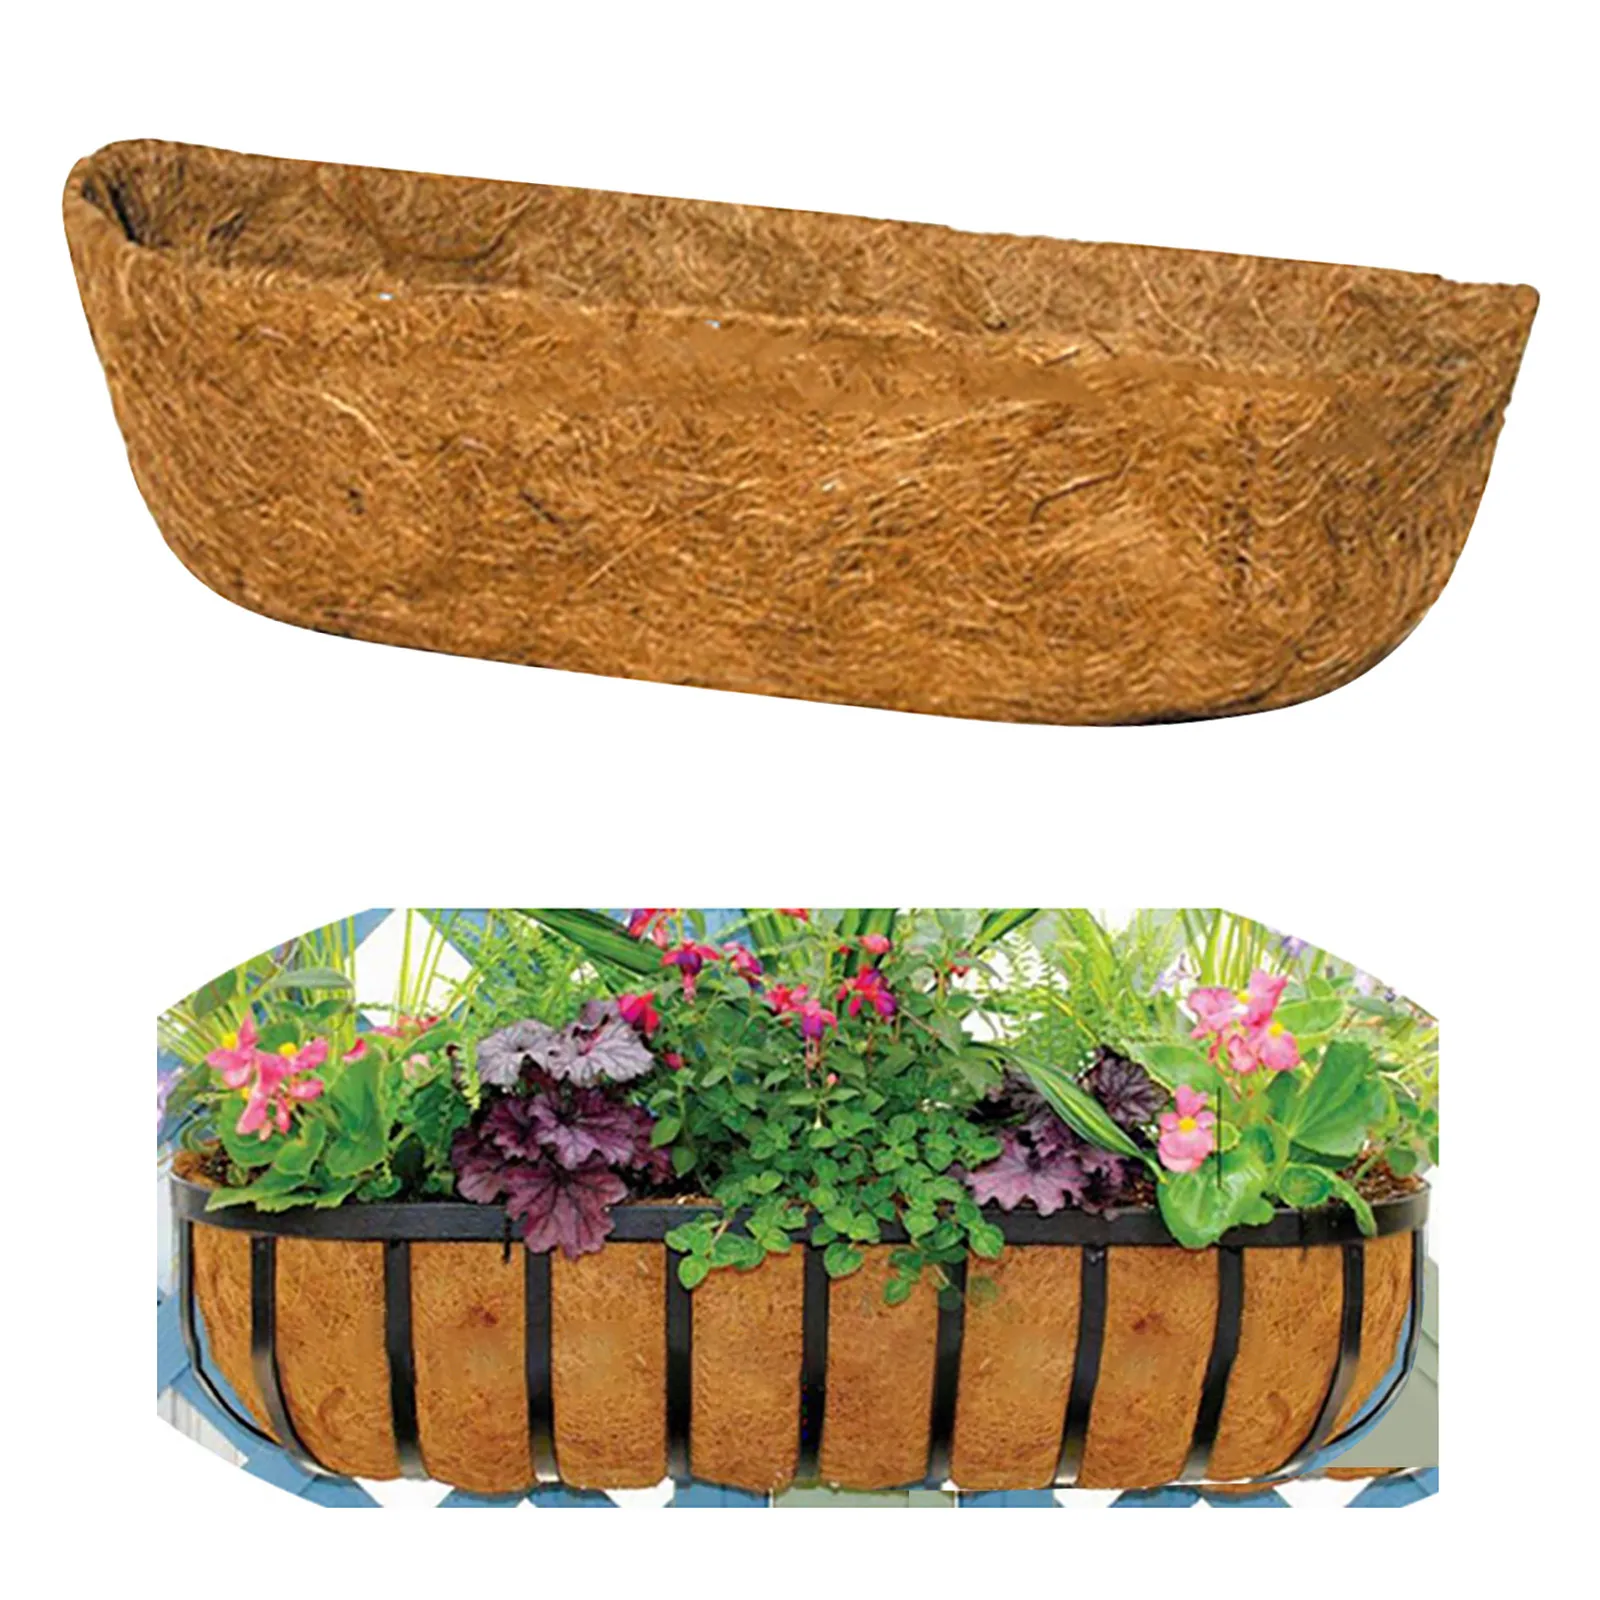 Basket Liner Paper,Trough Coco Fiber Replacement Liner Basket Liner for Garden Flower Pot 3 Styles 